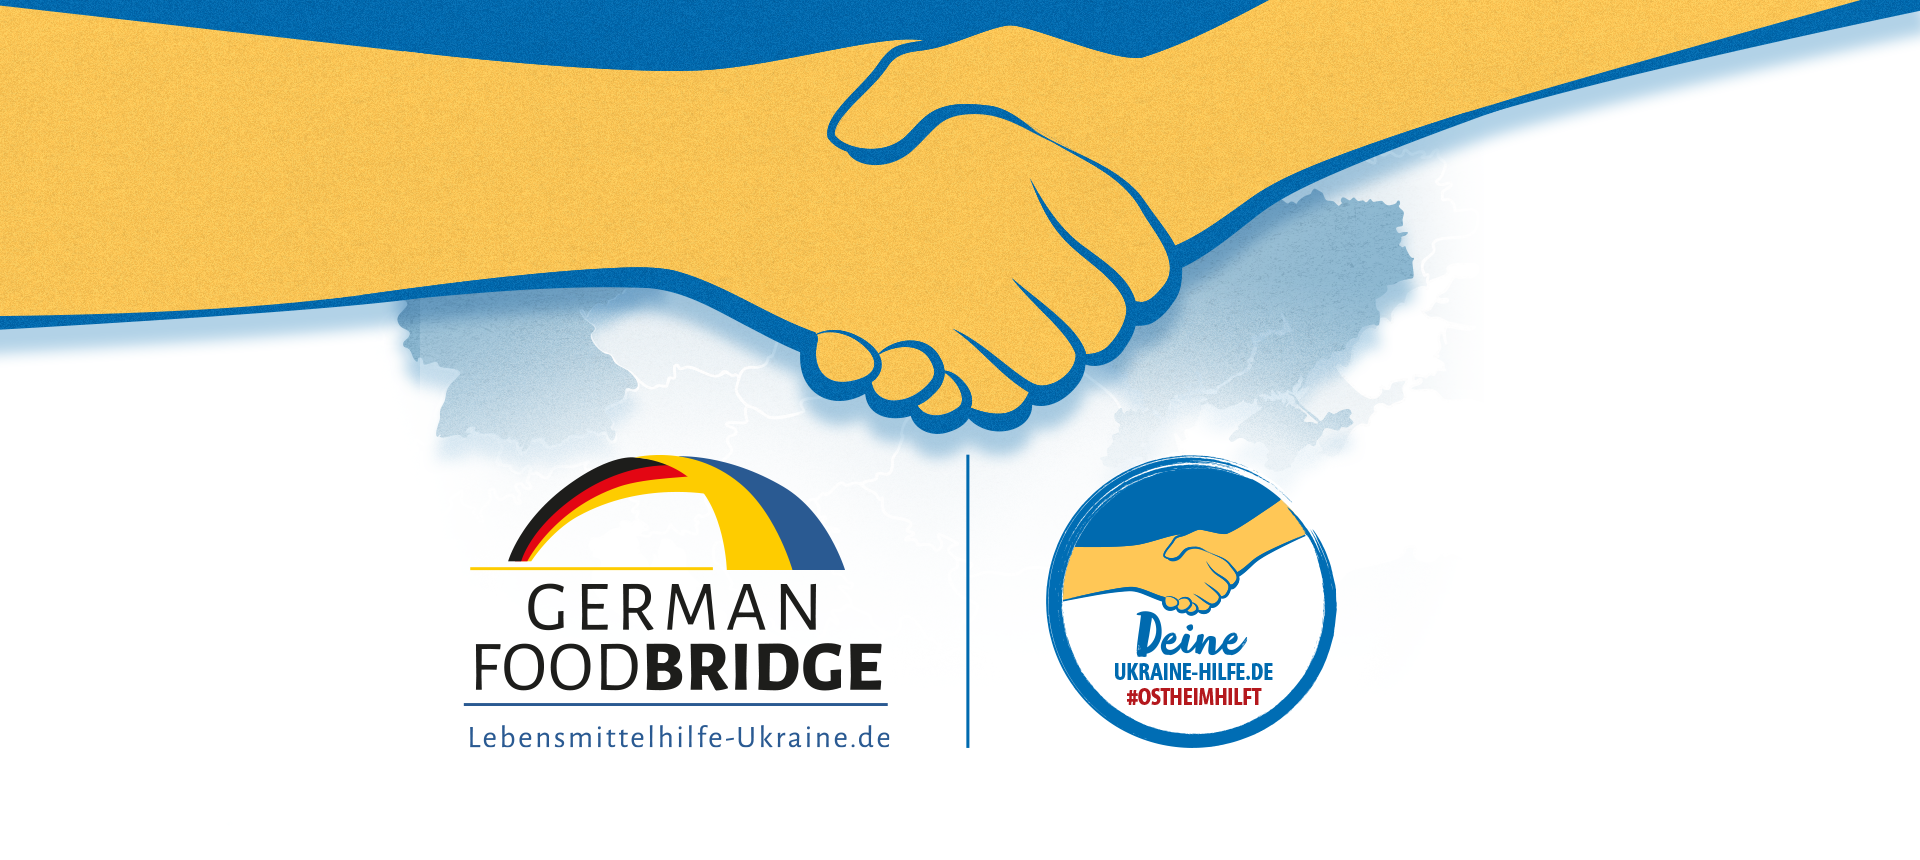 Deine Ukraine-Hilfe und German Food Bridge